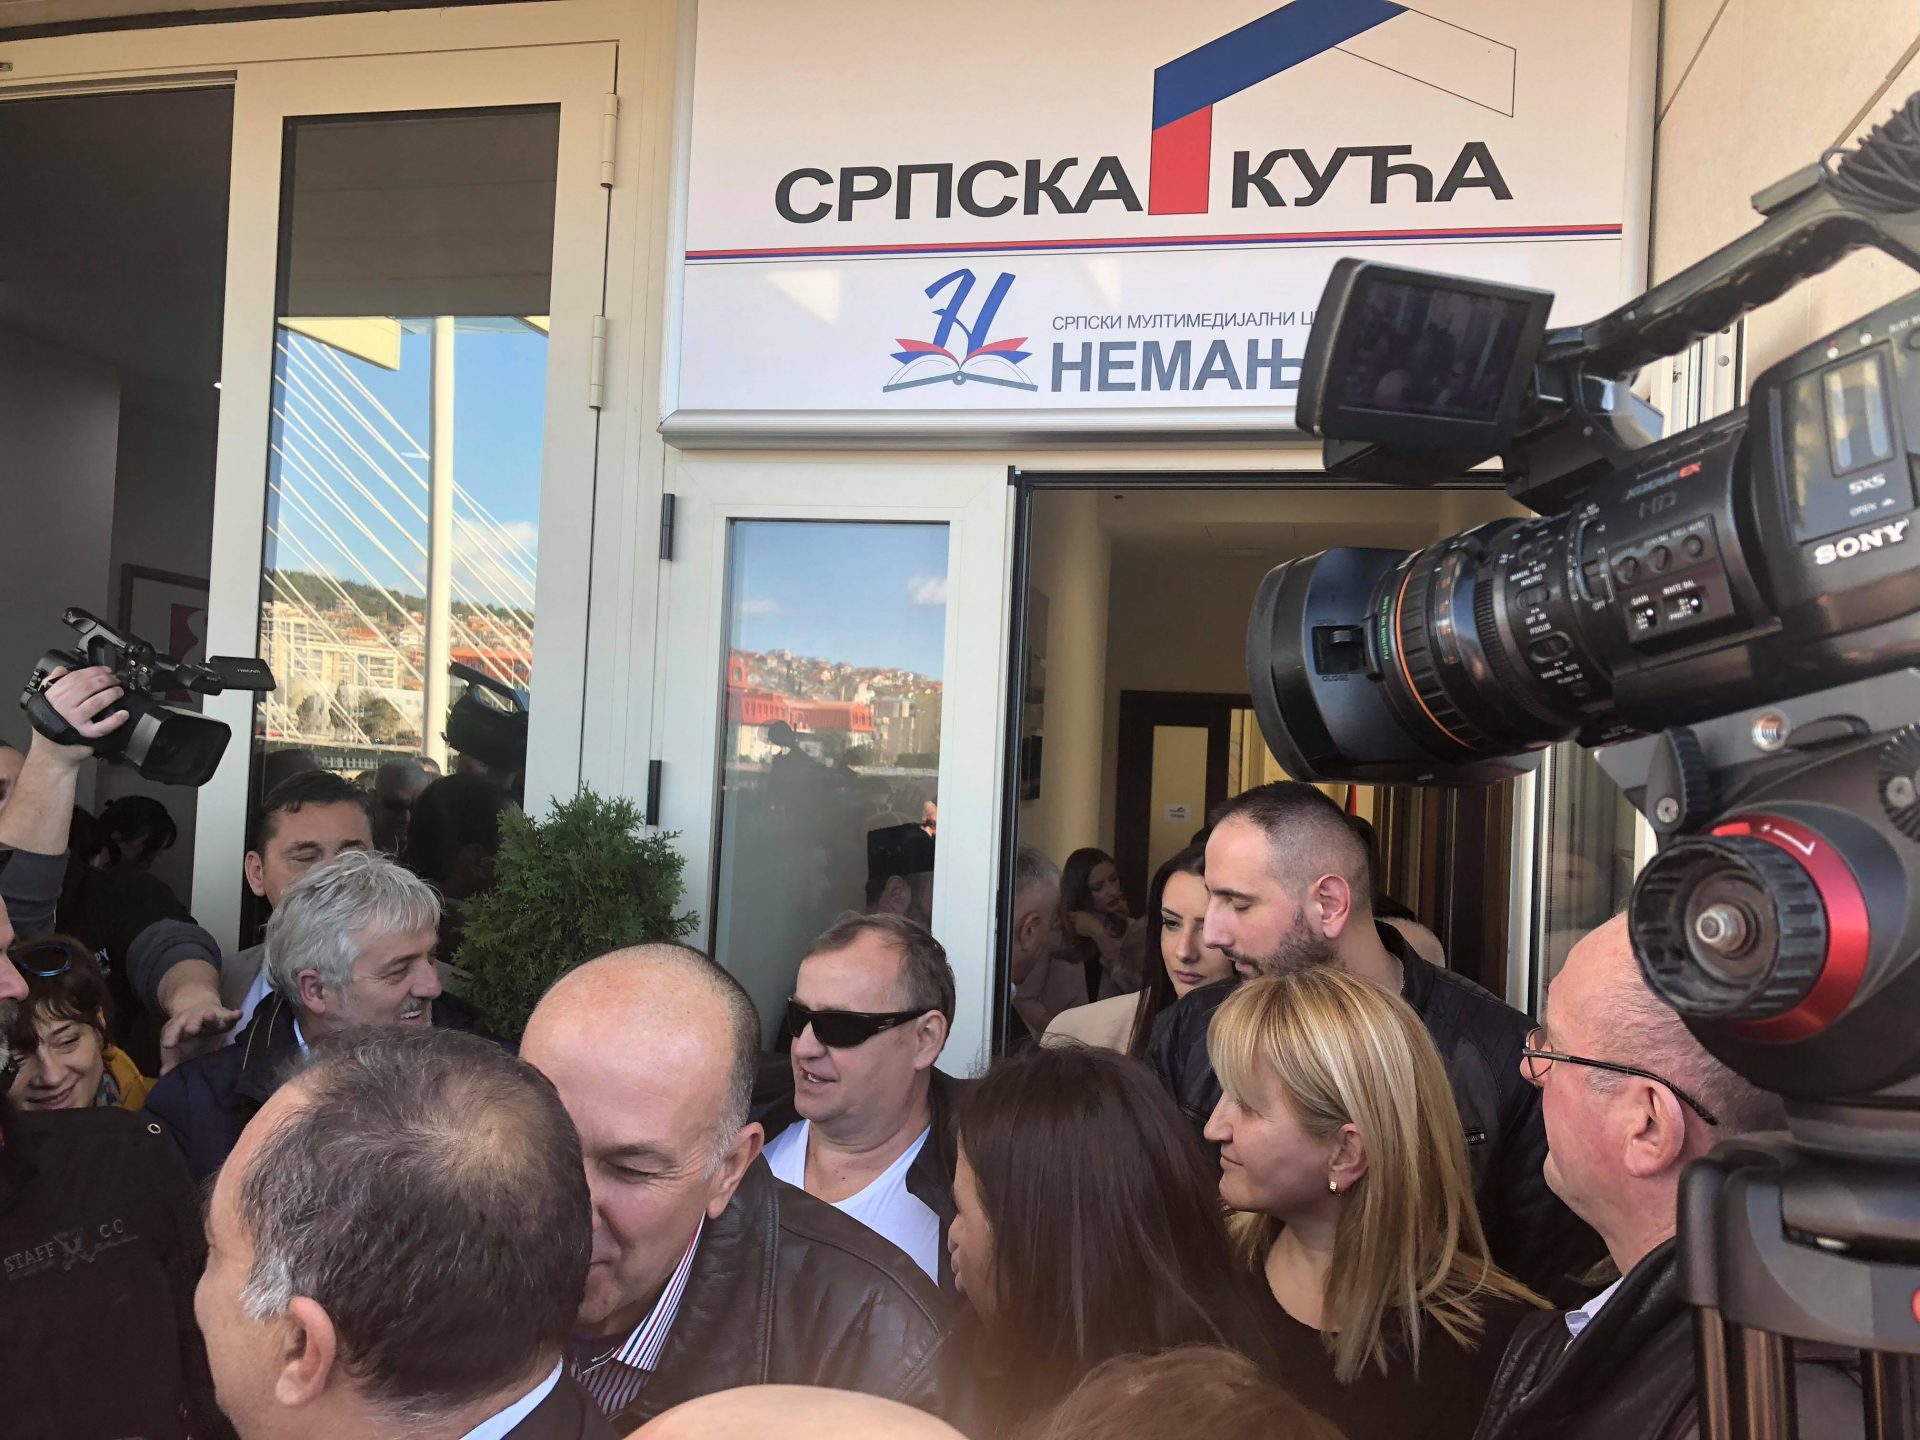 Otvorena Srpska kuća u Podgorici: "Da je lako biti Srbin ne bi nas zapalo"